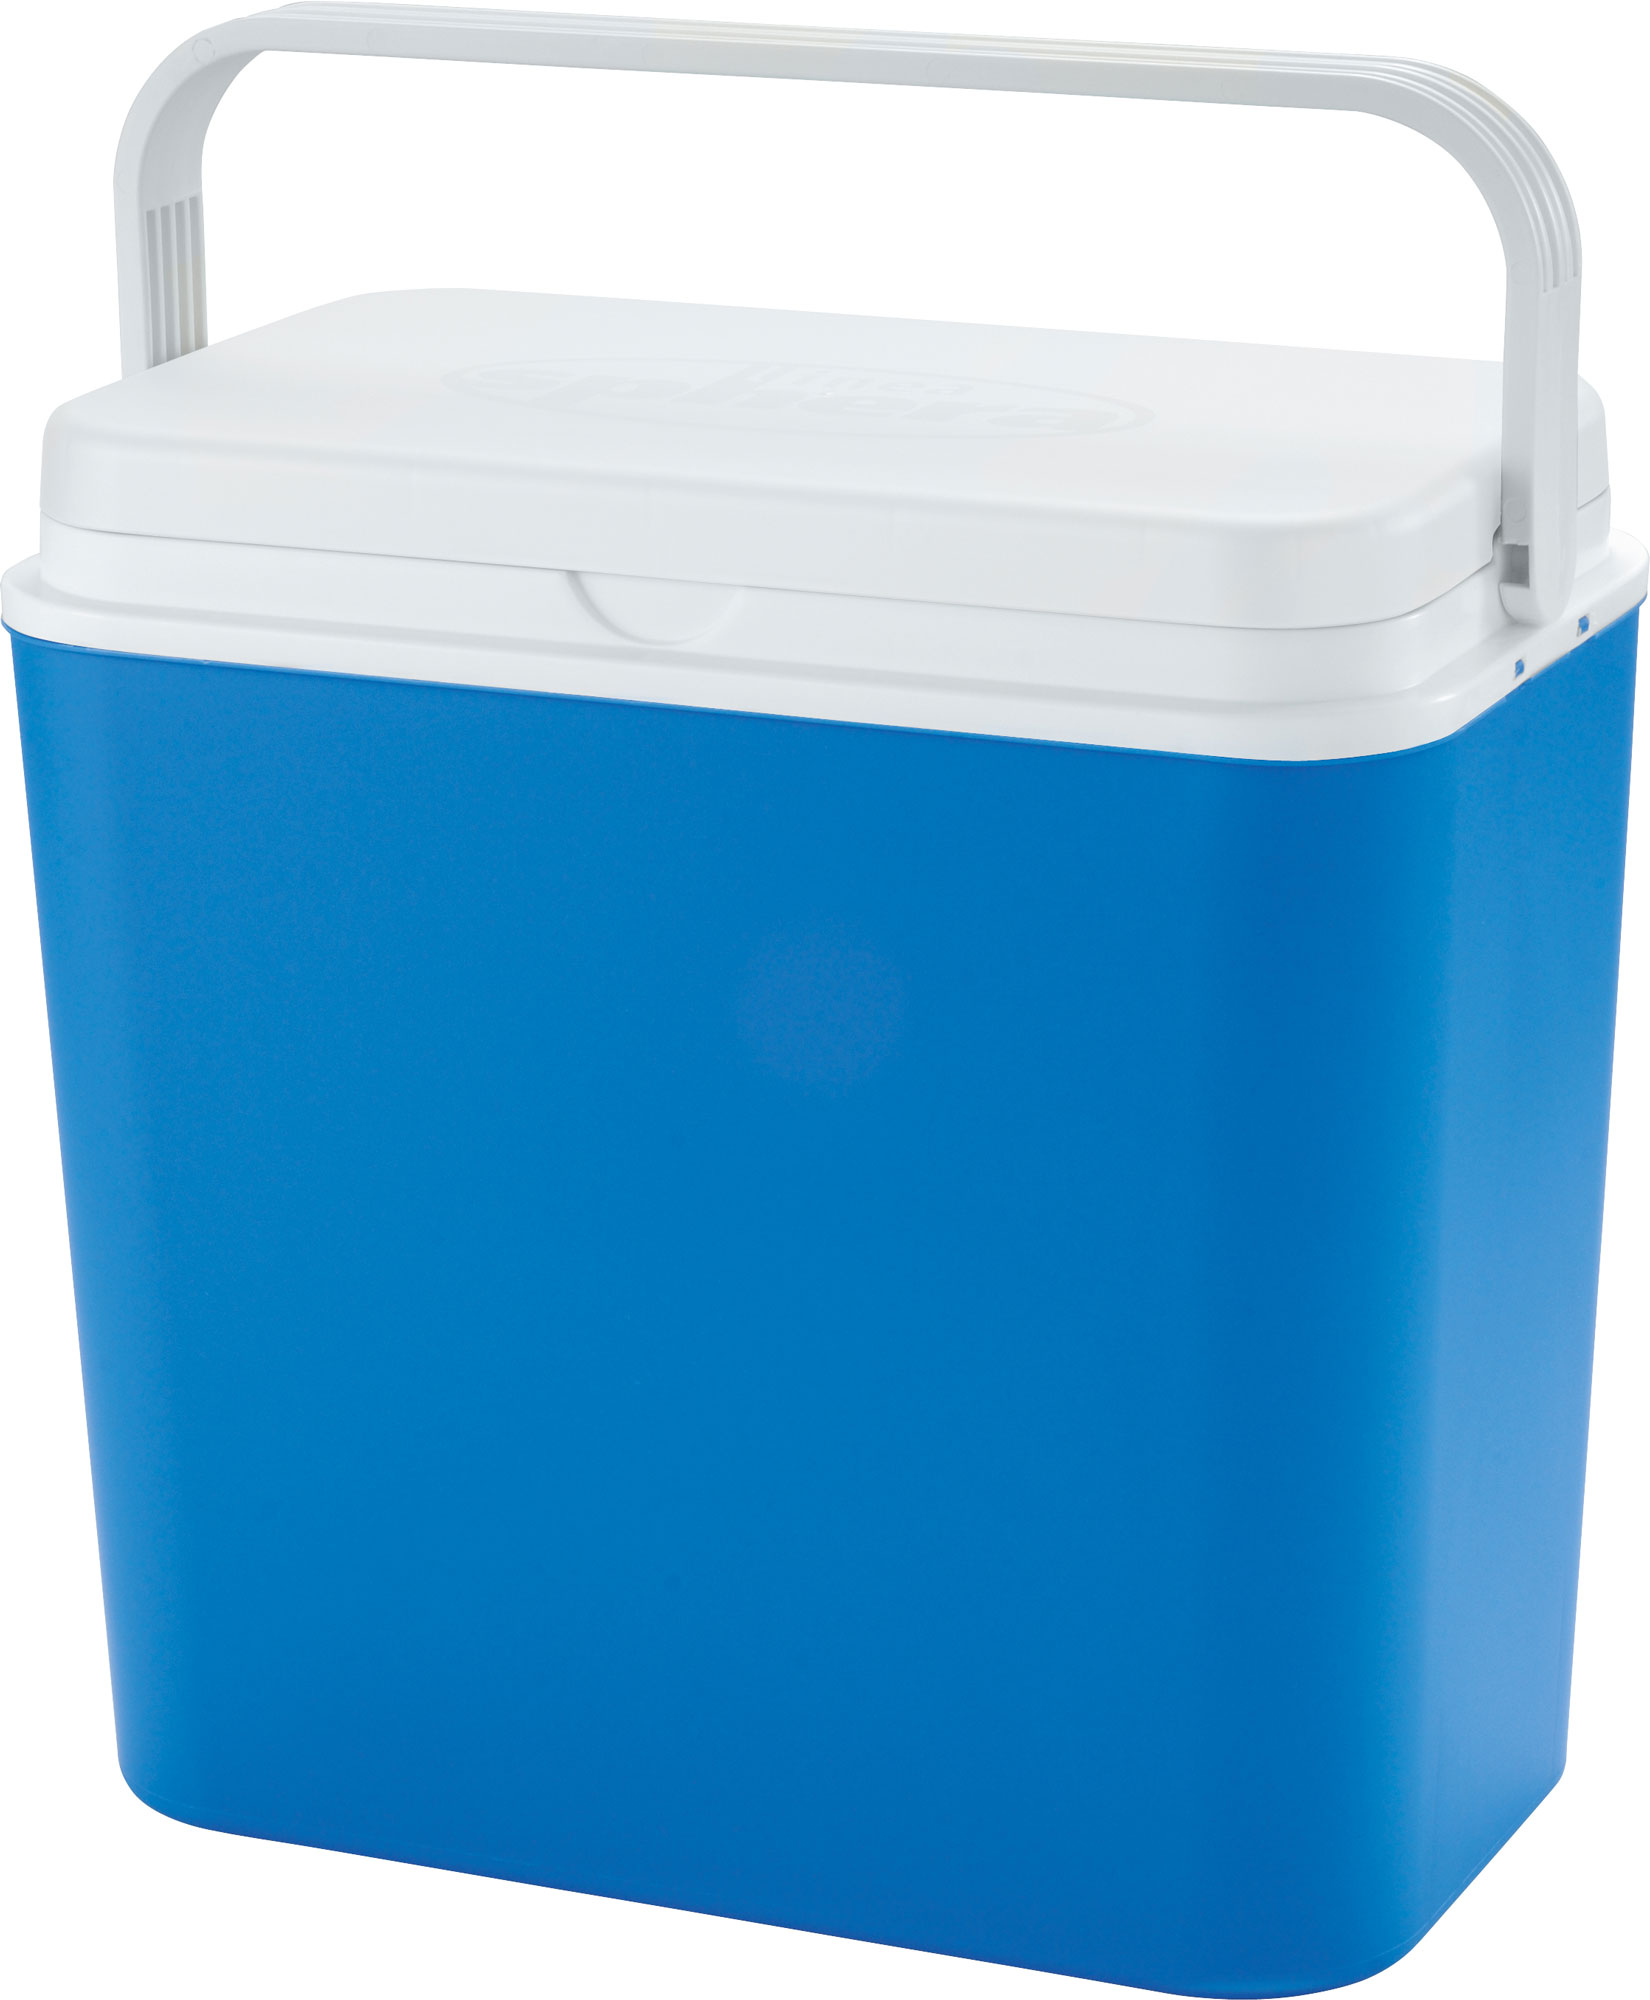 

Atlantic Electric Cool Box 24 Liter 12 volt (4132) - автомобильный холодильник (Blue/White)